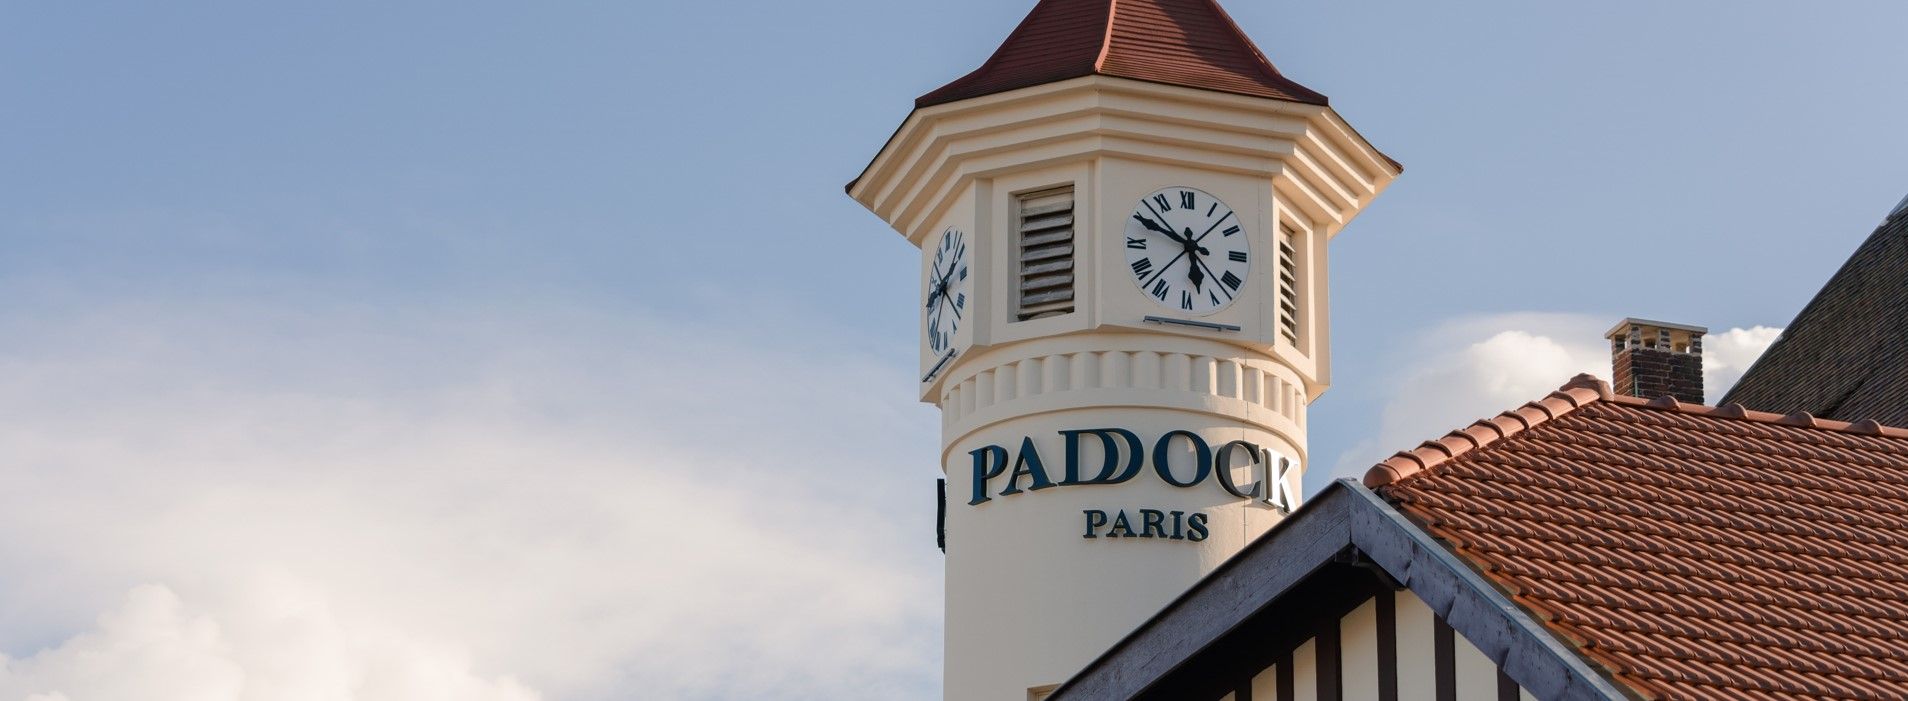 paddock-paris-horloge